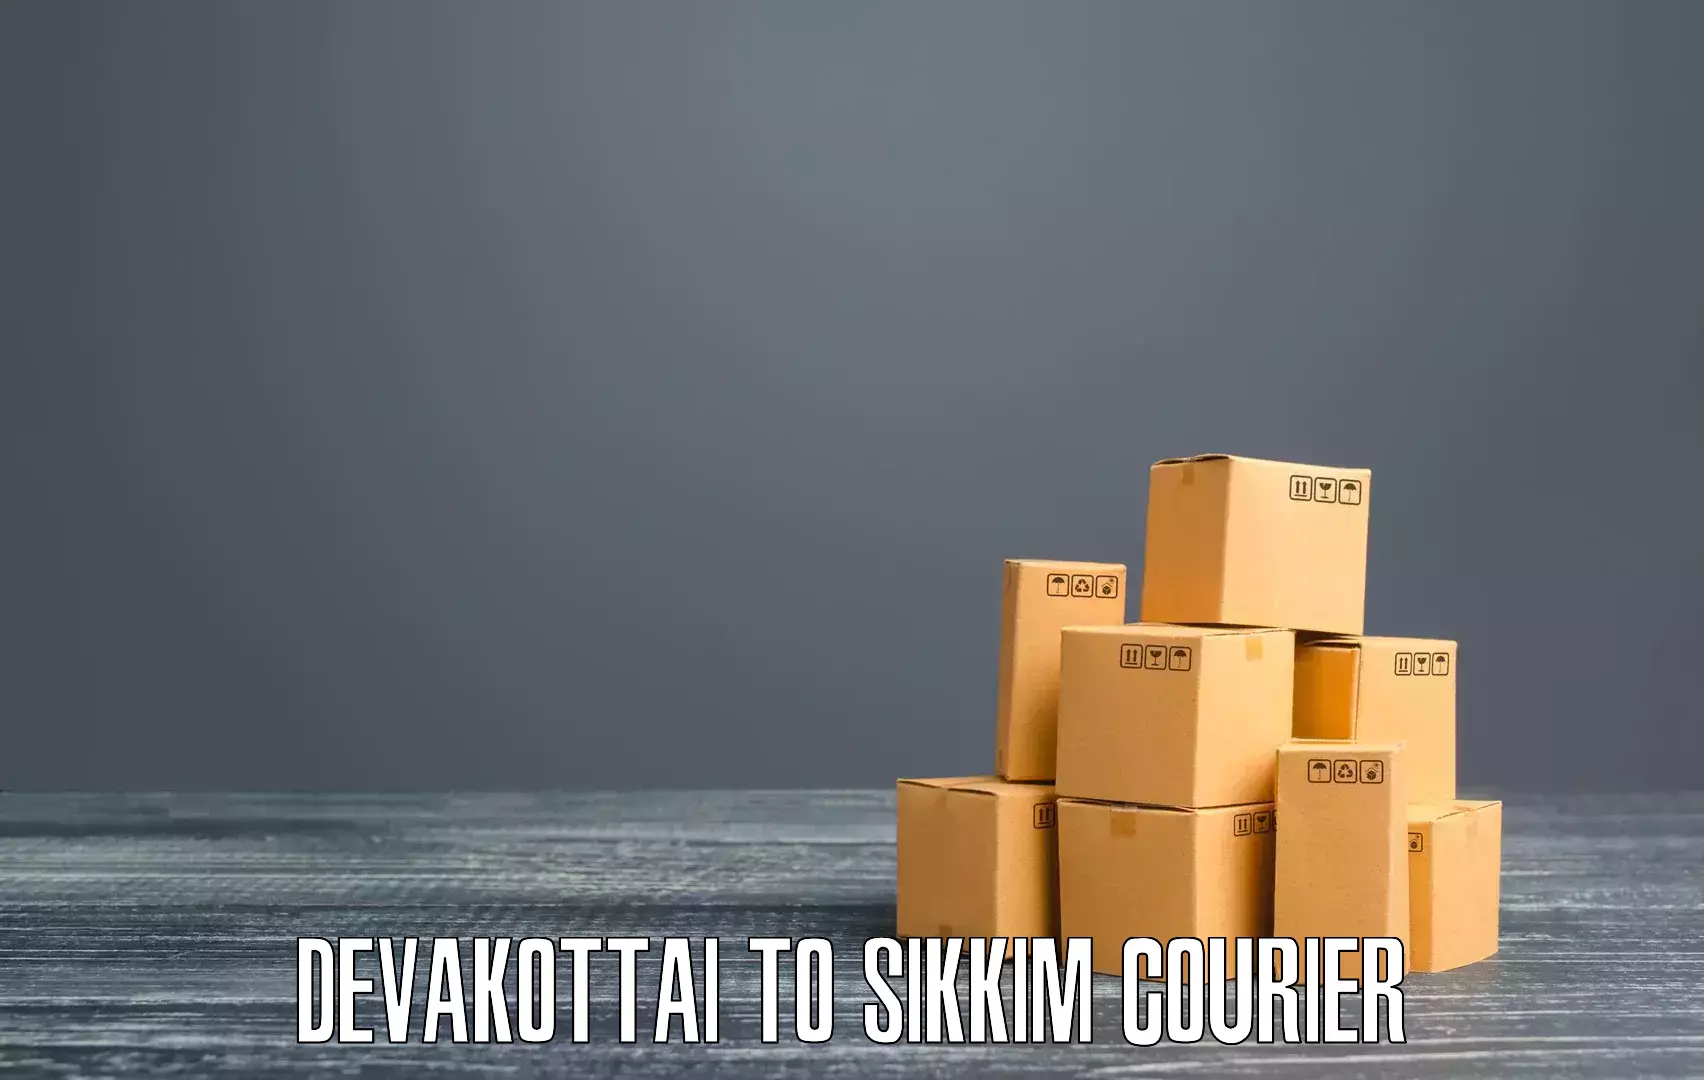 High-priority parcel service Devakottai to West Sikkim